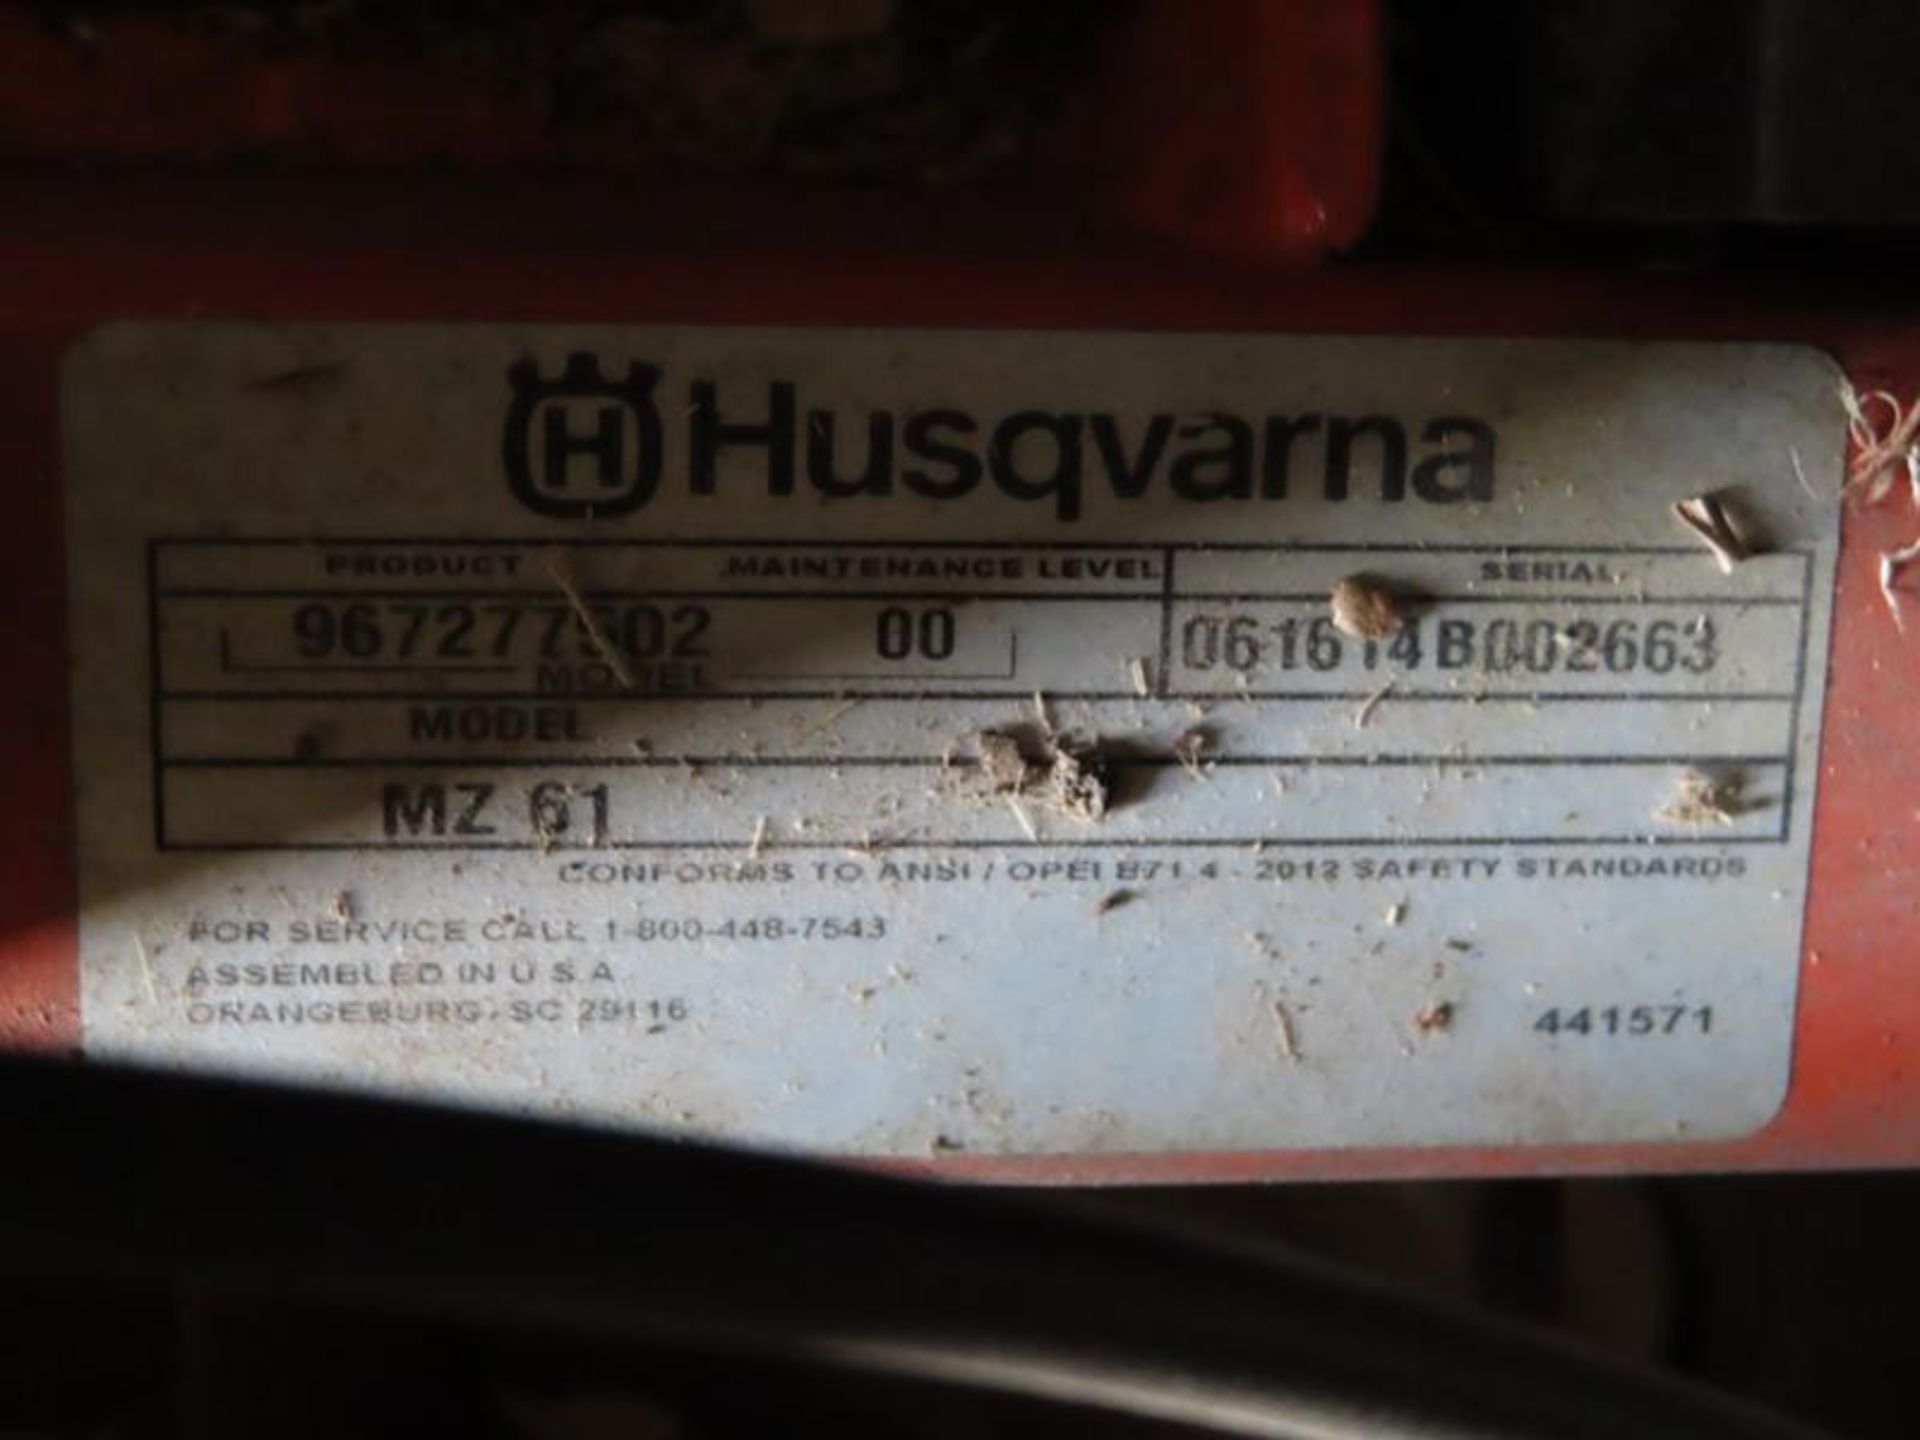 Husqvuarna Zero Turn Mdl. M261 Lawnmower - Image 3 of 3